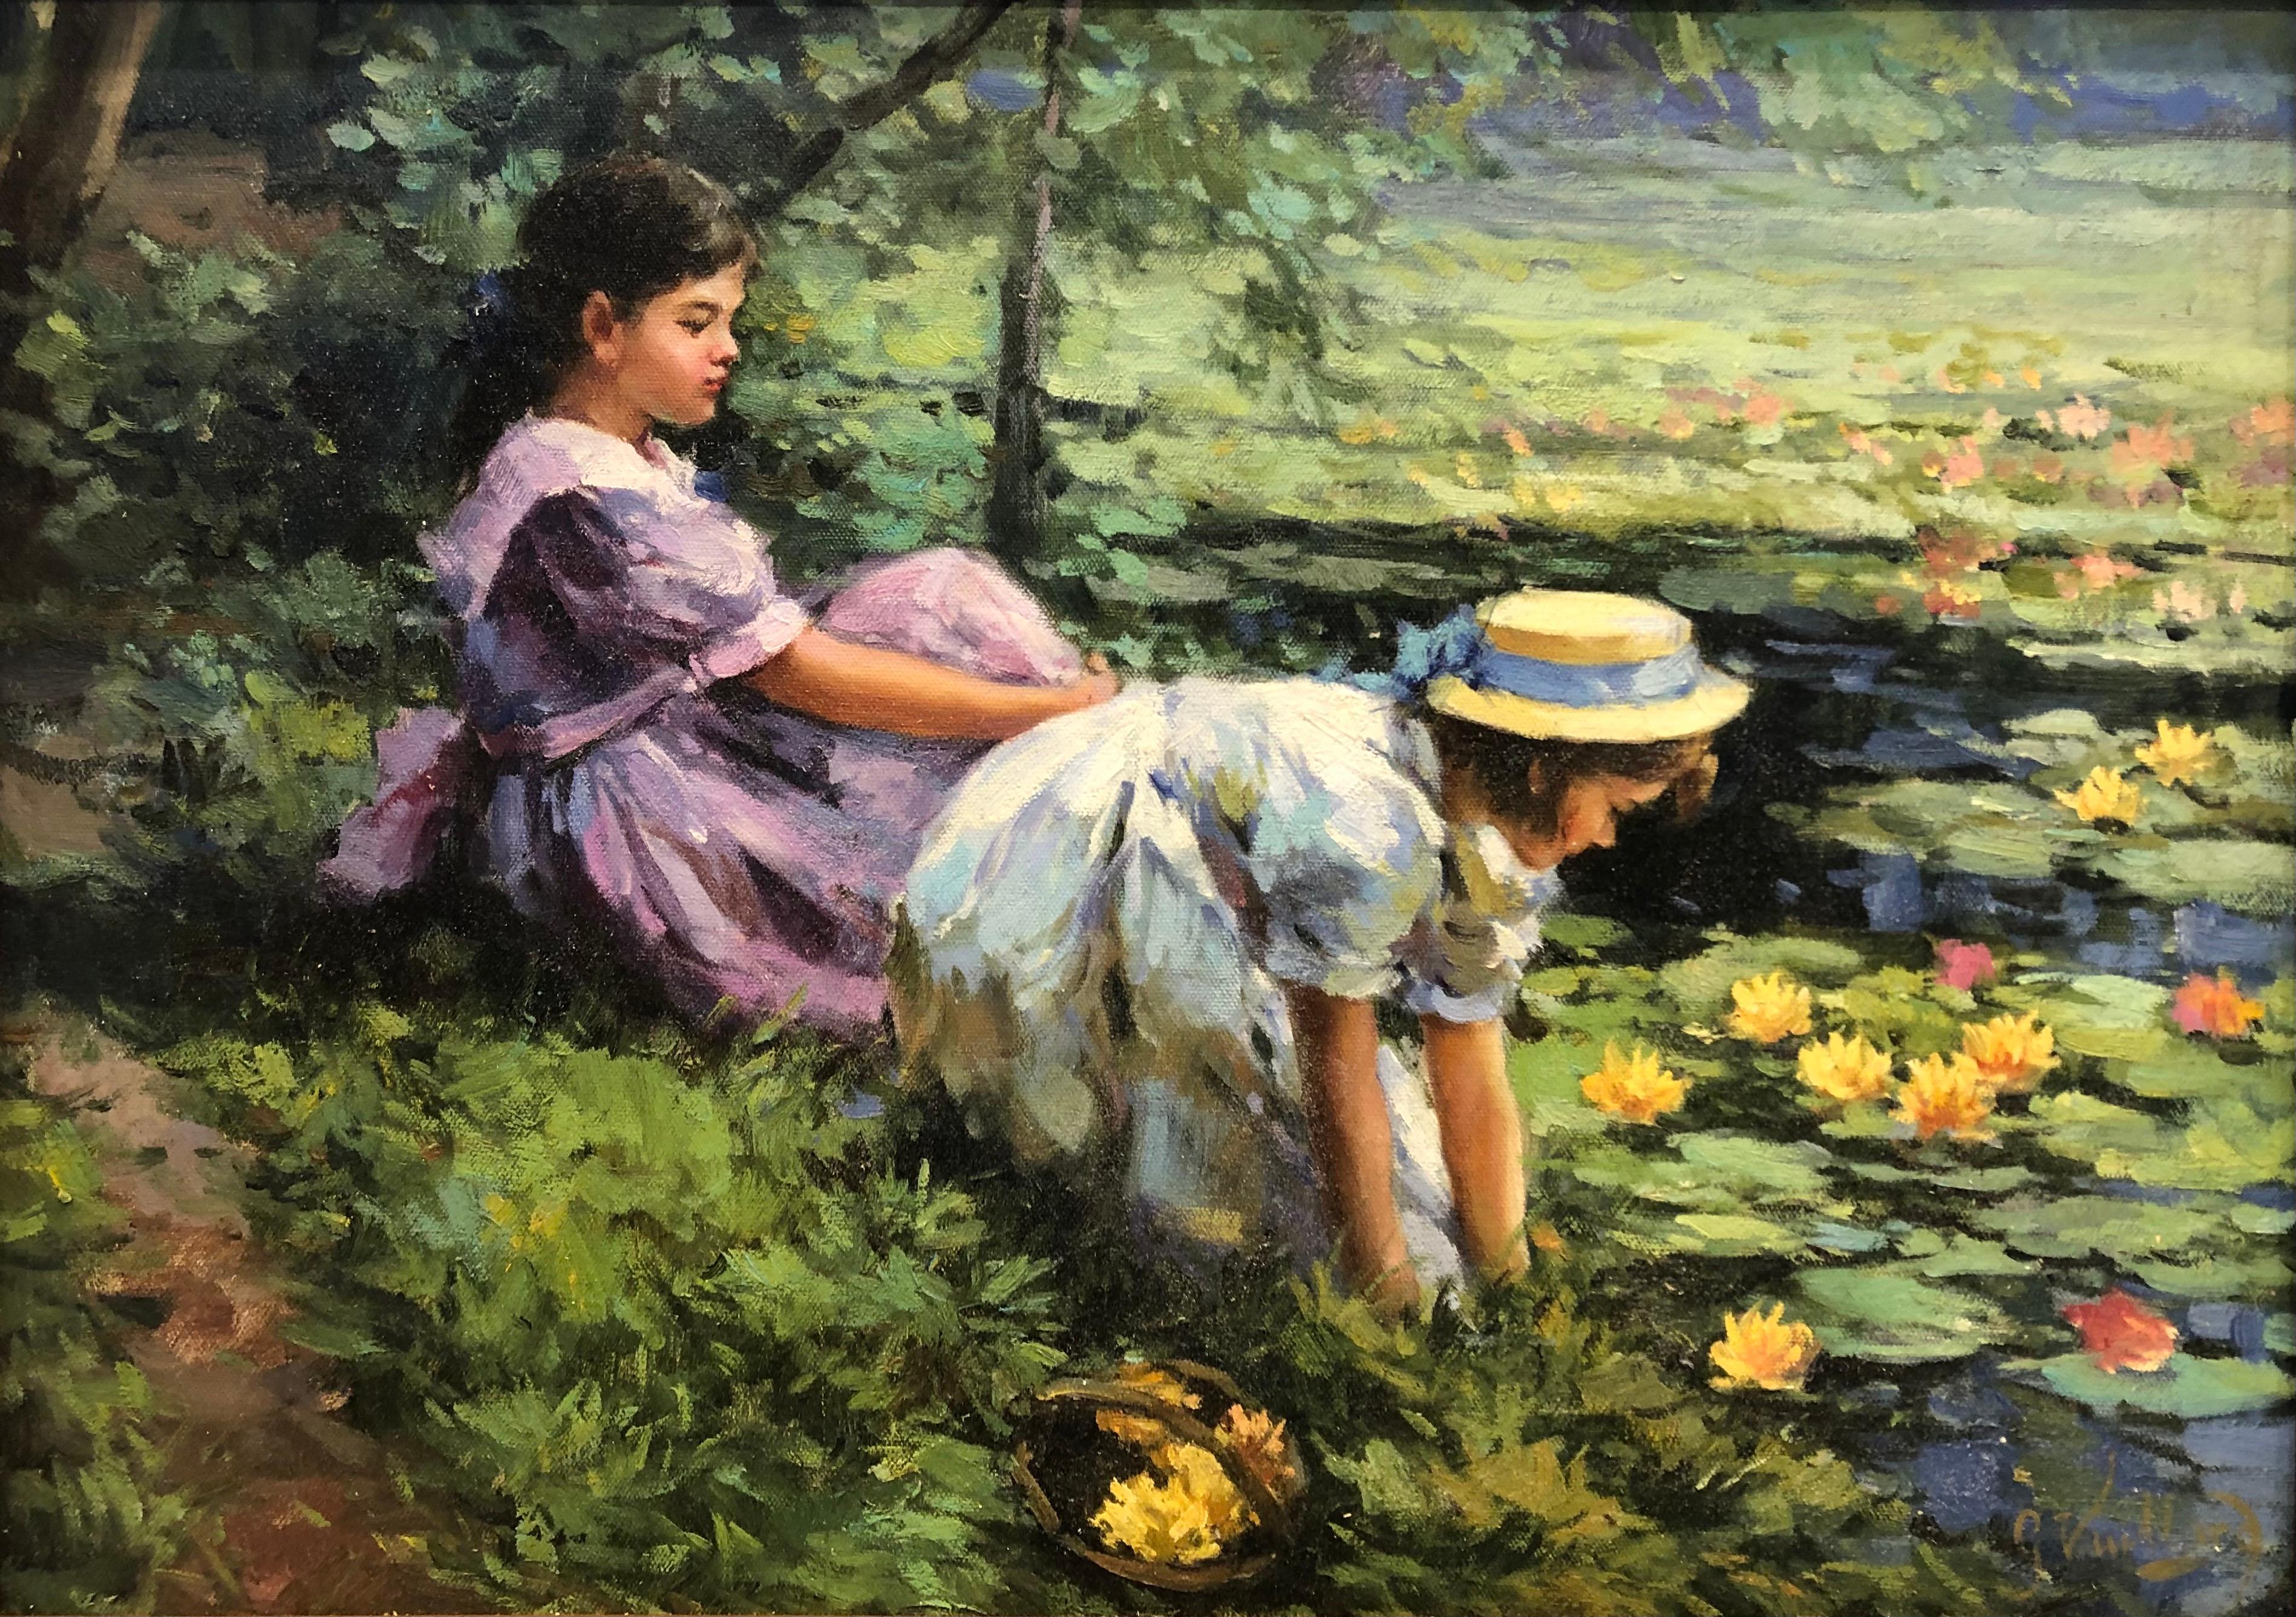 Landscape Painting George Vuillard - The Lily Pond (L'étang aux nénuphars)